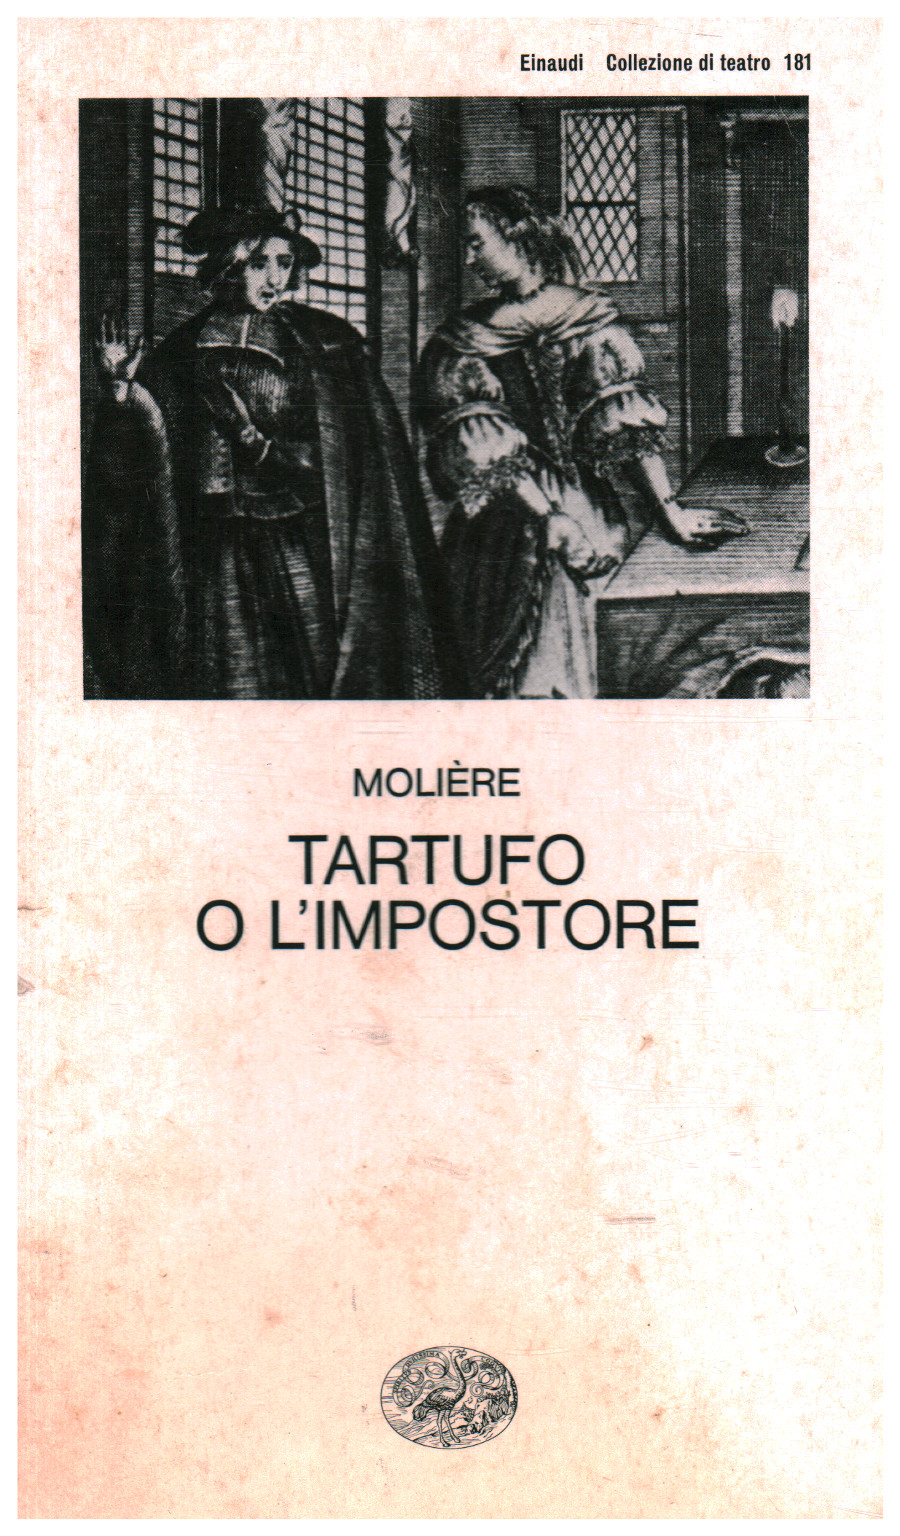 Tartufo o l'impostore, Moliére